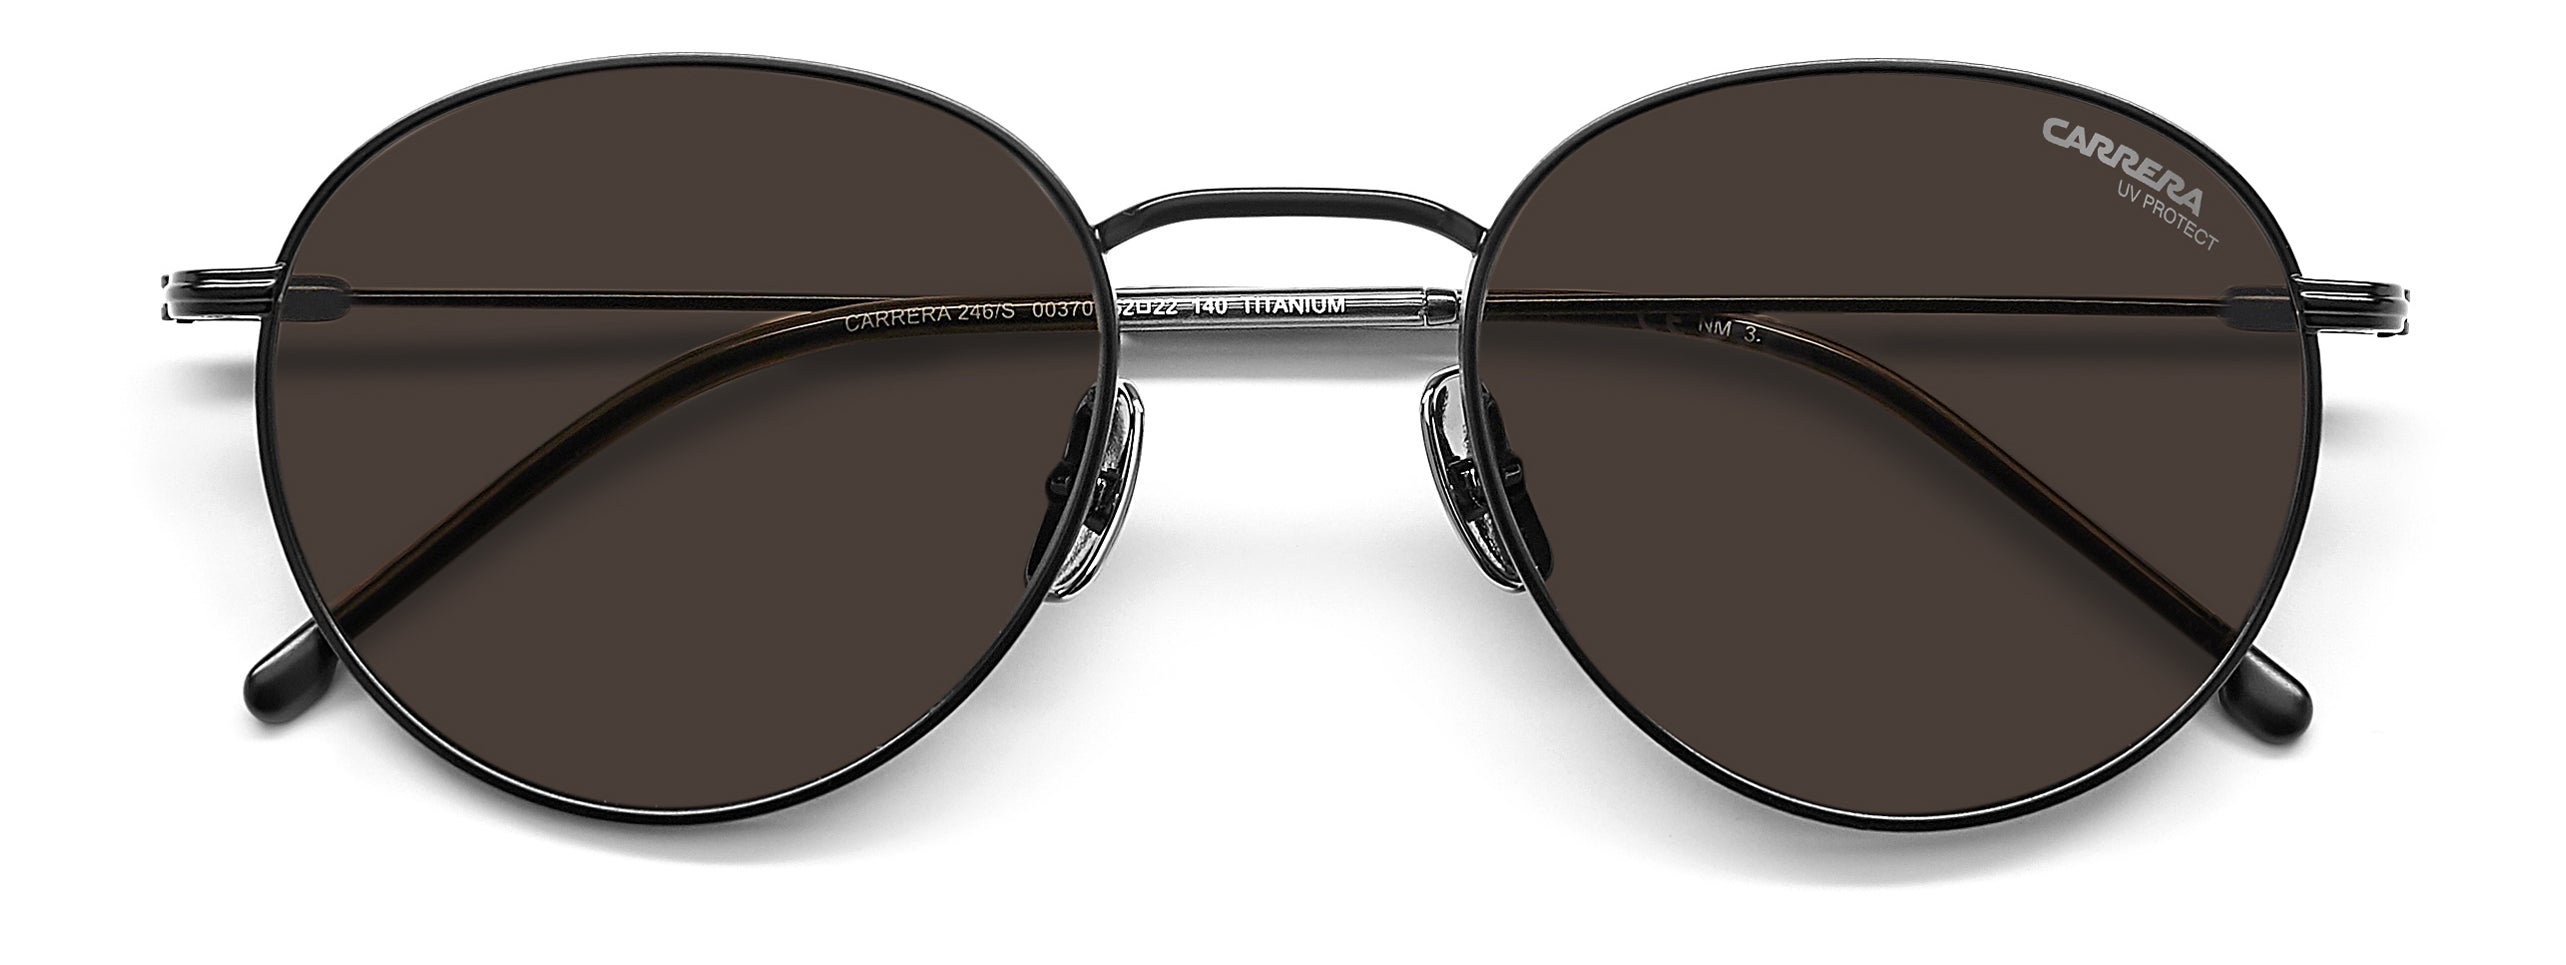 Carrera Round Titanium Sunglasses